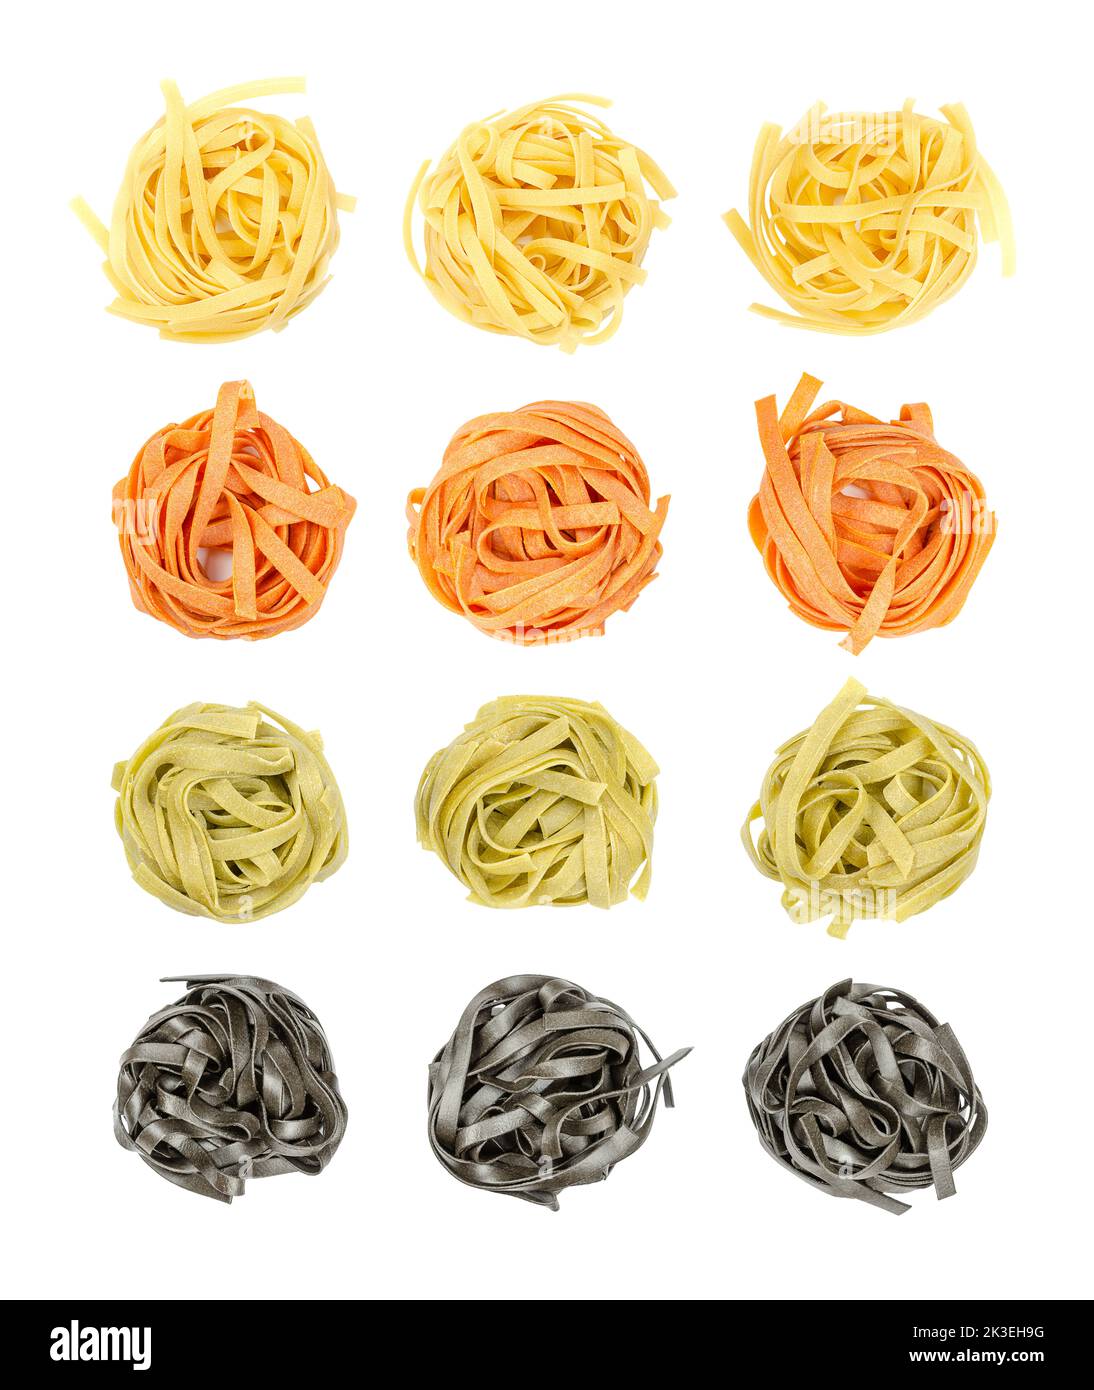 Pasta tagliatelle coloreada, retorcida en nidos, desde arriba, aislada sobre blanco. Cuatro filas de pasta tradicional italiana sin cocinar y seca. Foto de stock